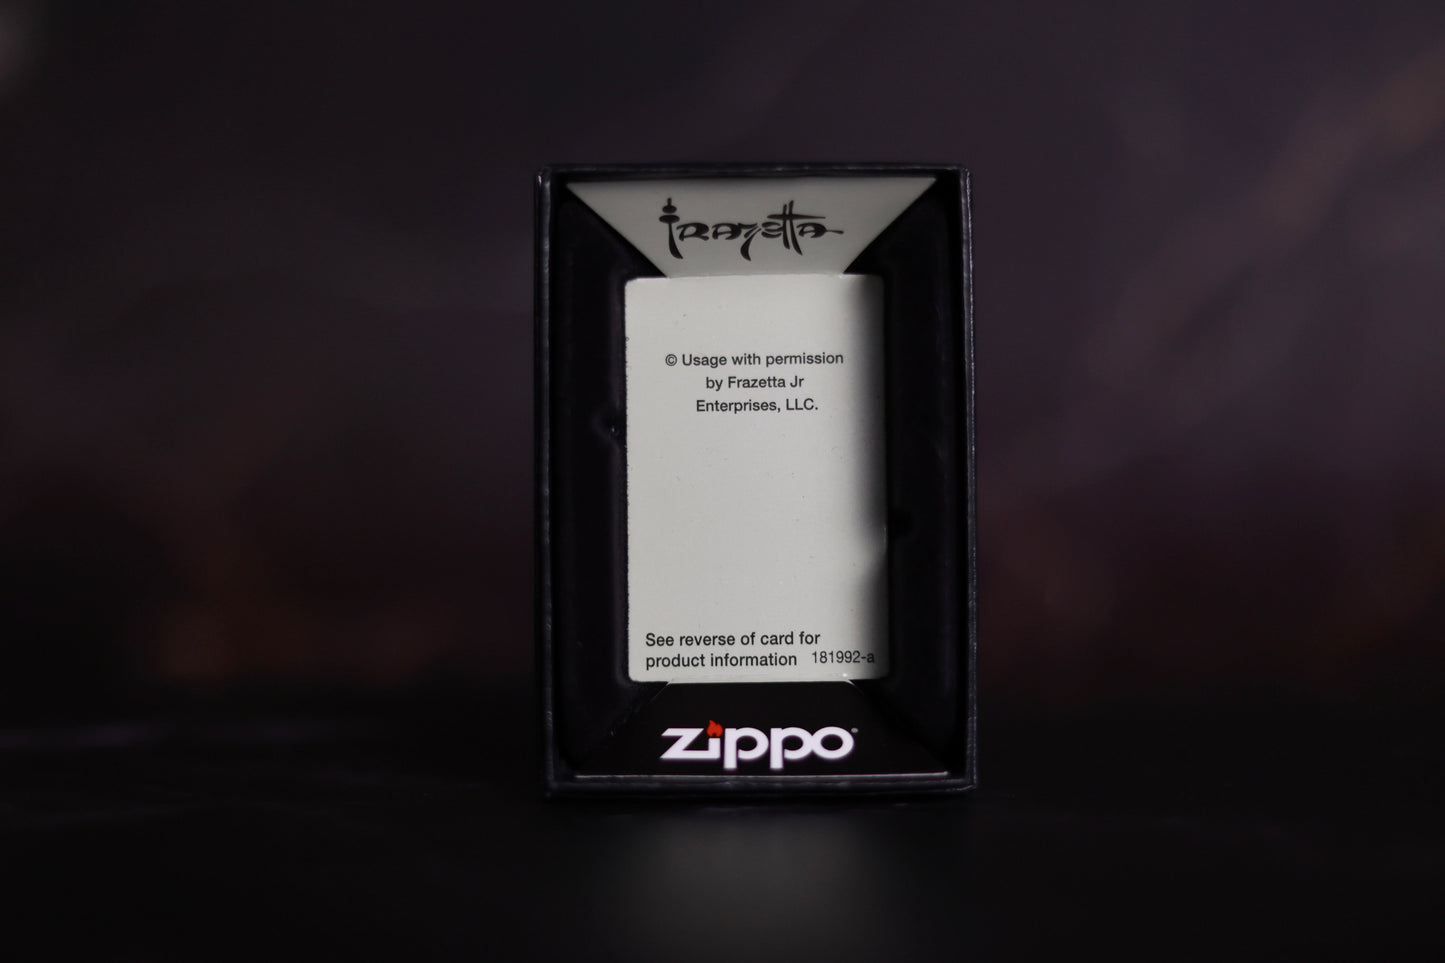 Encounter Zippo Lighter